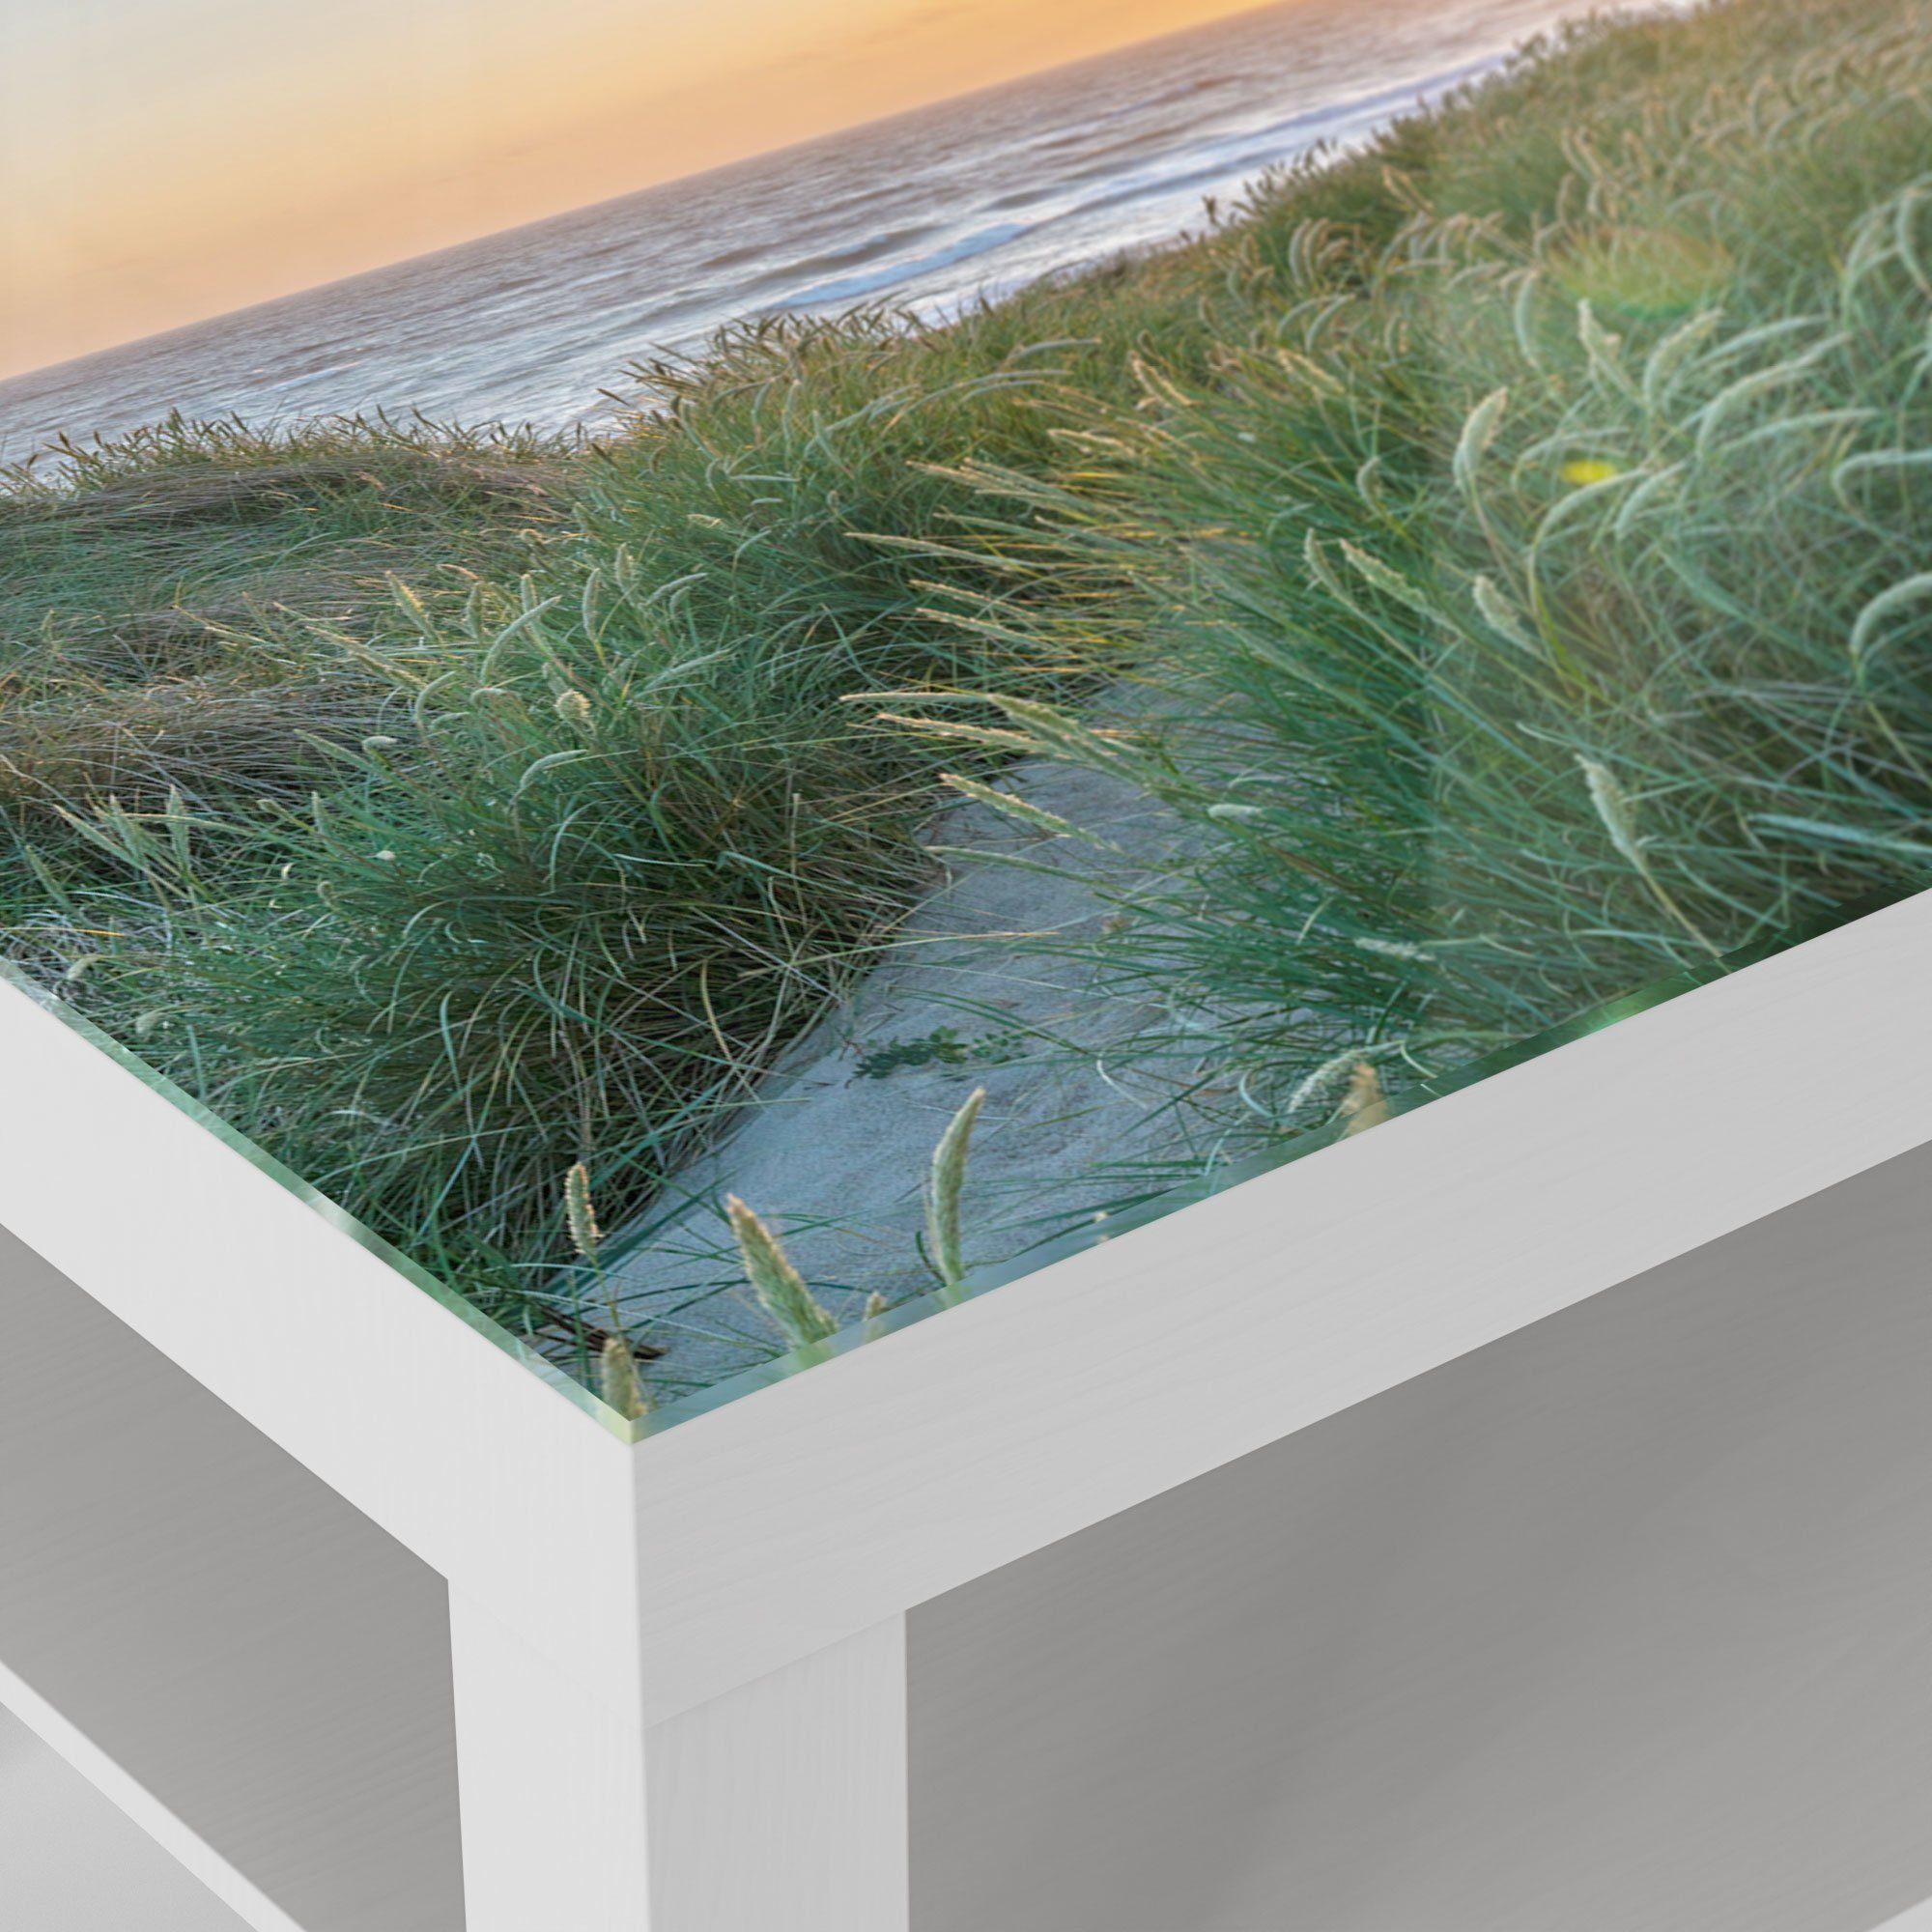 'Abendstimmung DEQORI am Weiß Meer', Couchtisch Beistelltisch Glastisch modern Glas